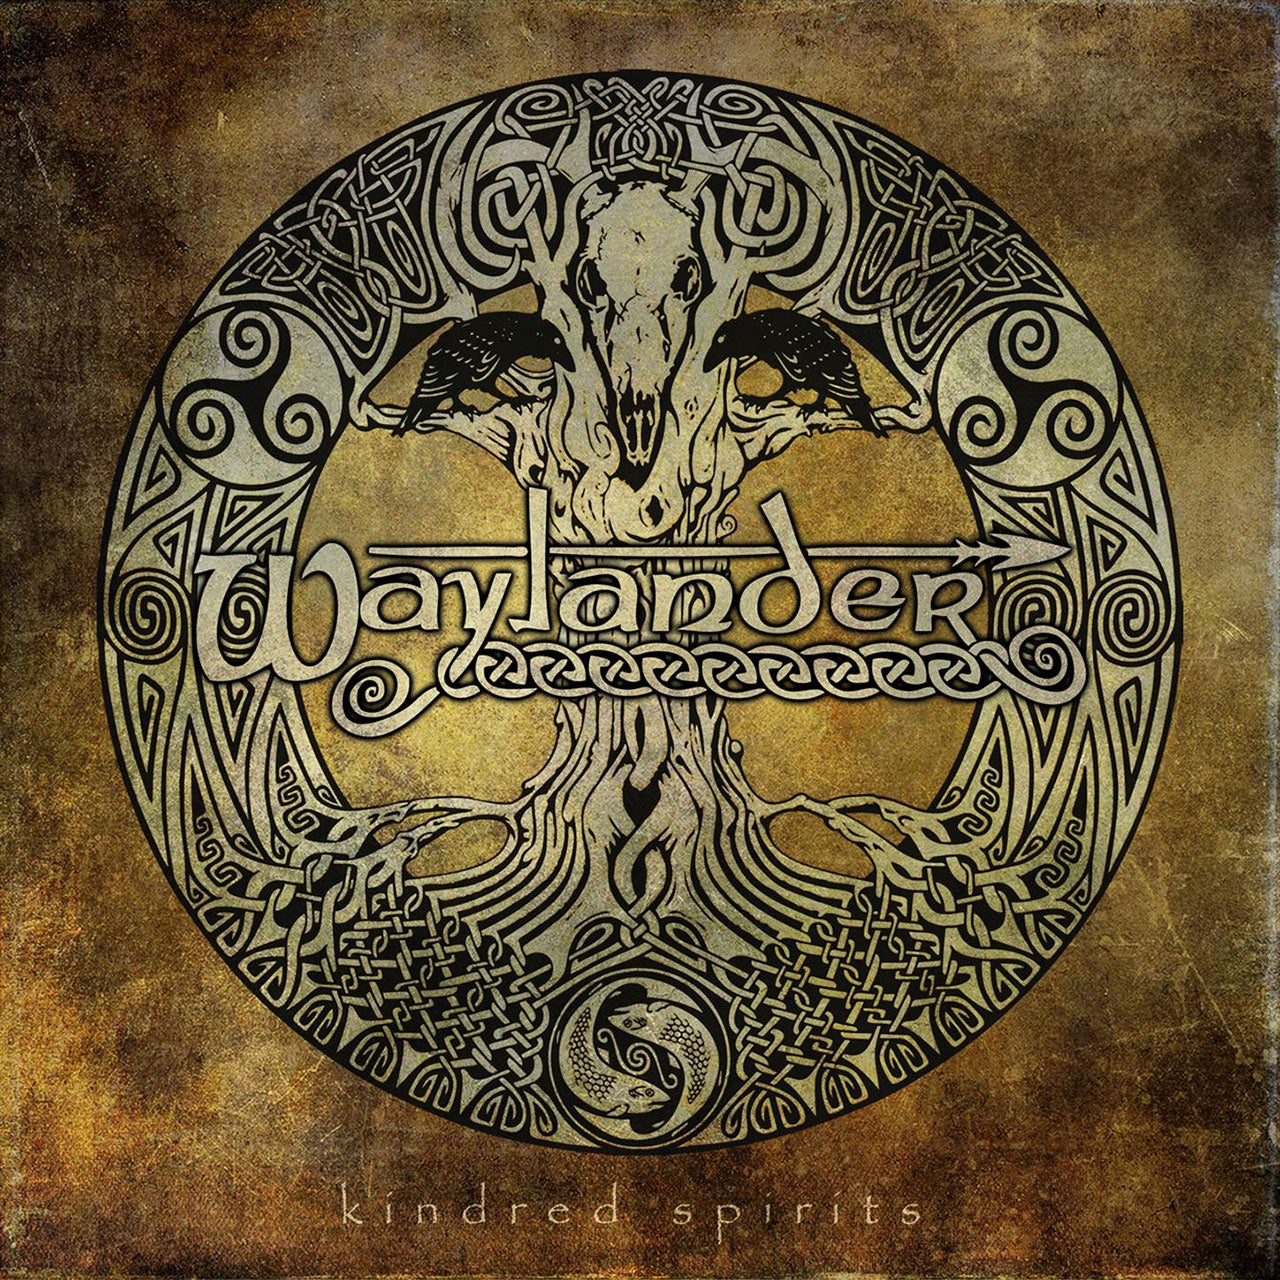 Waylander - Kindred Spirits (CD)